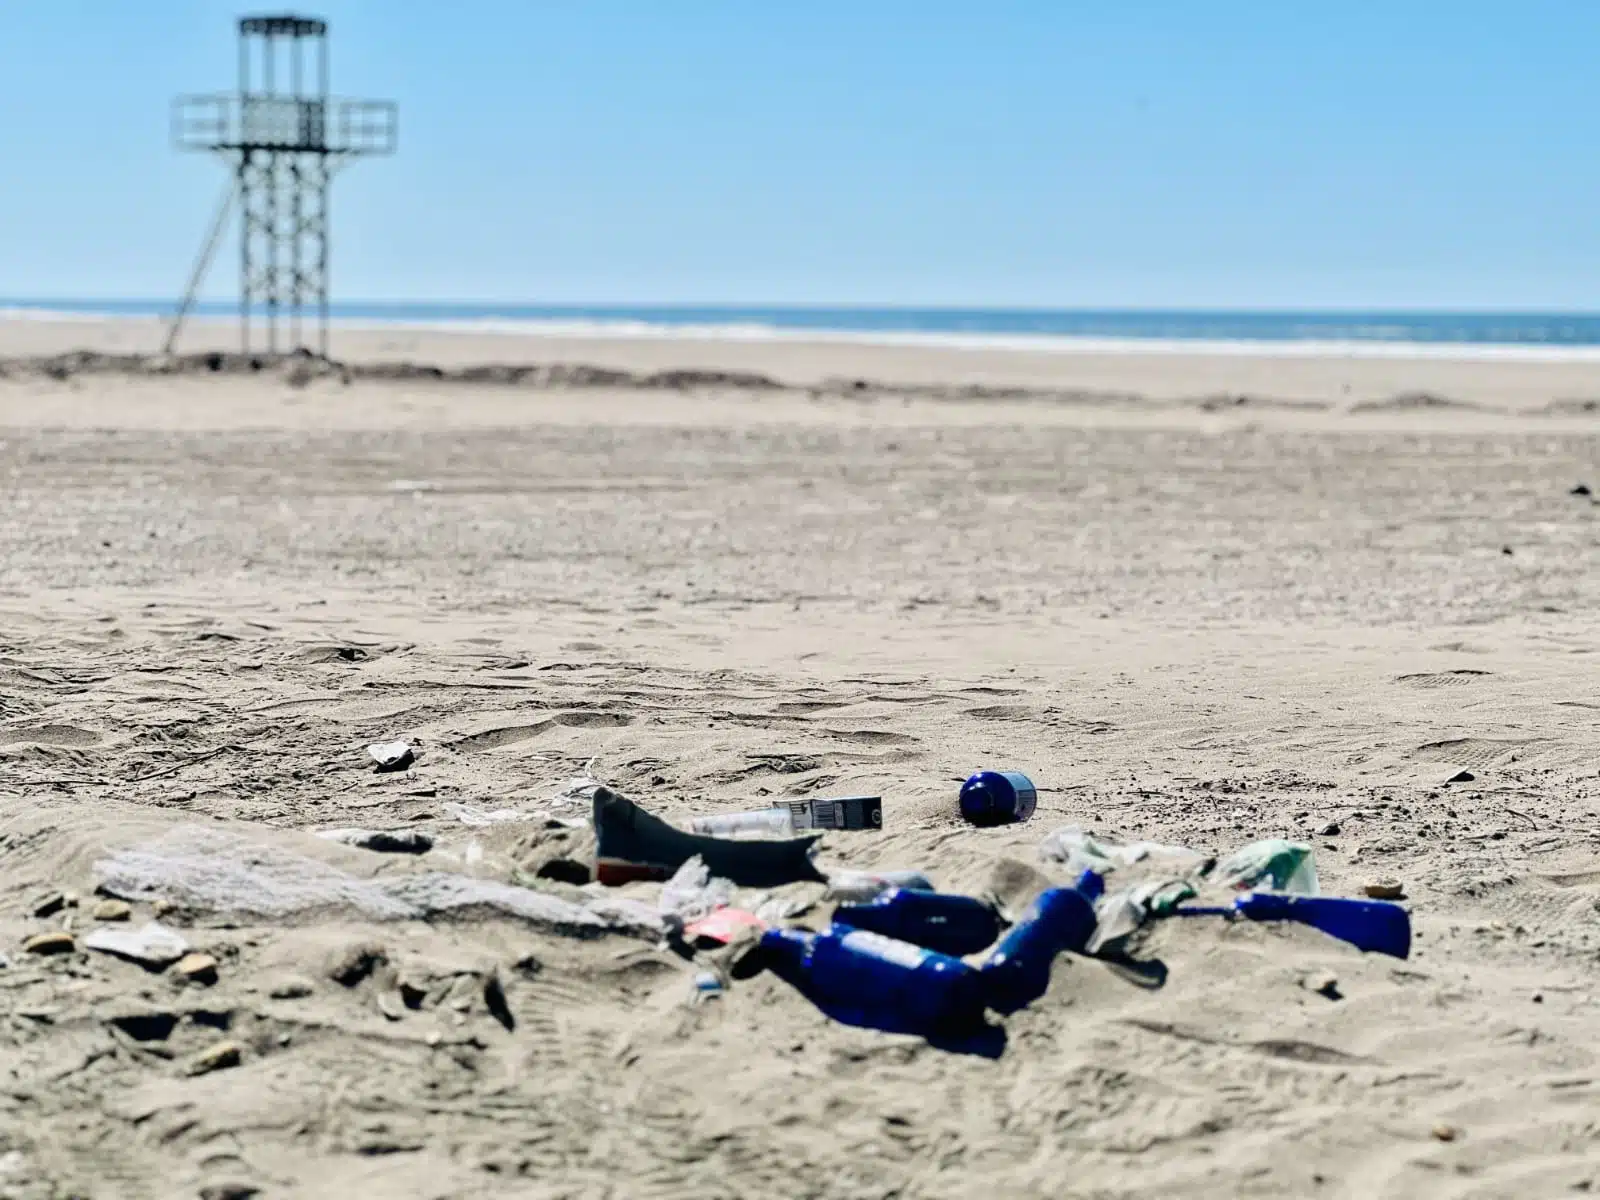 Campaña de limpieza en playa Las Glorias, Guasave./ Foto: Jonatan Espinoza